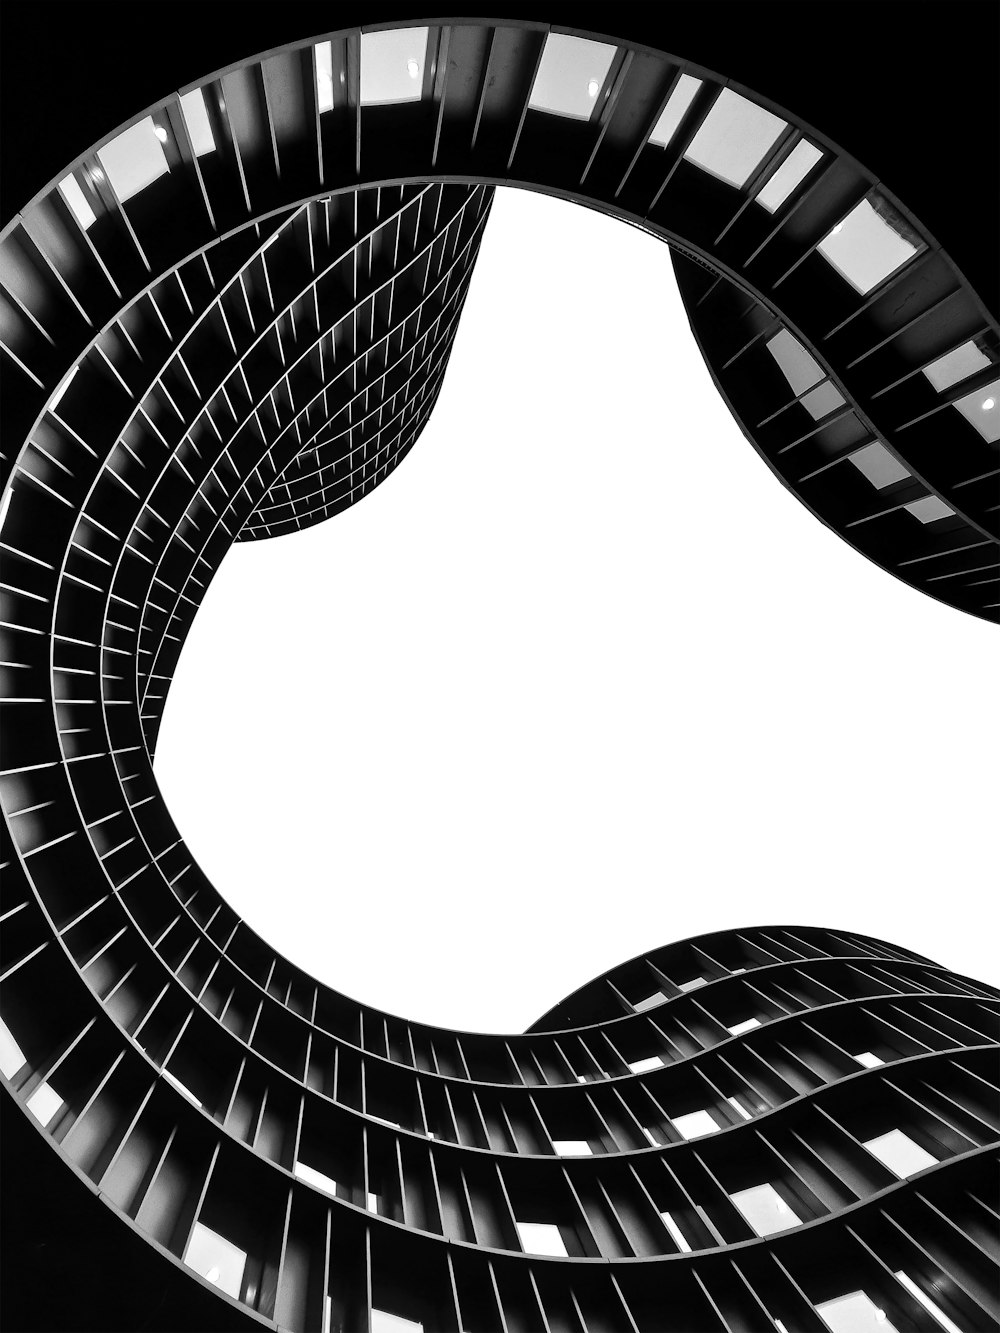 Ein Schwarz-Weiß-Foto eines spiralförmigen Gebäudes